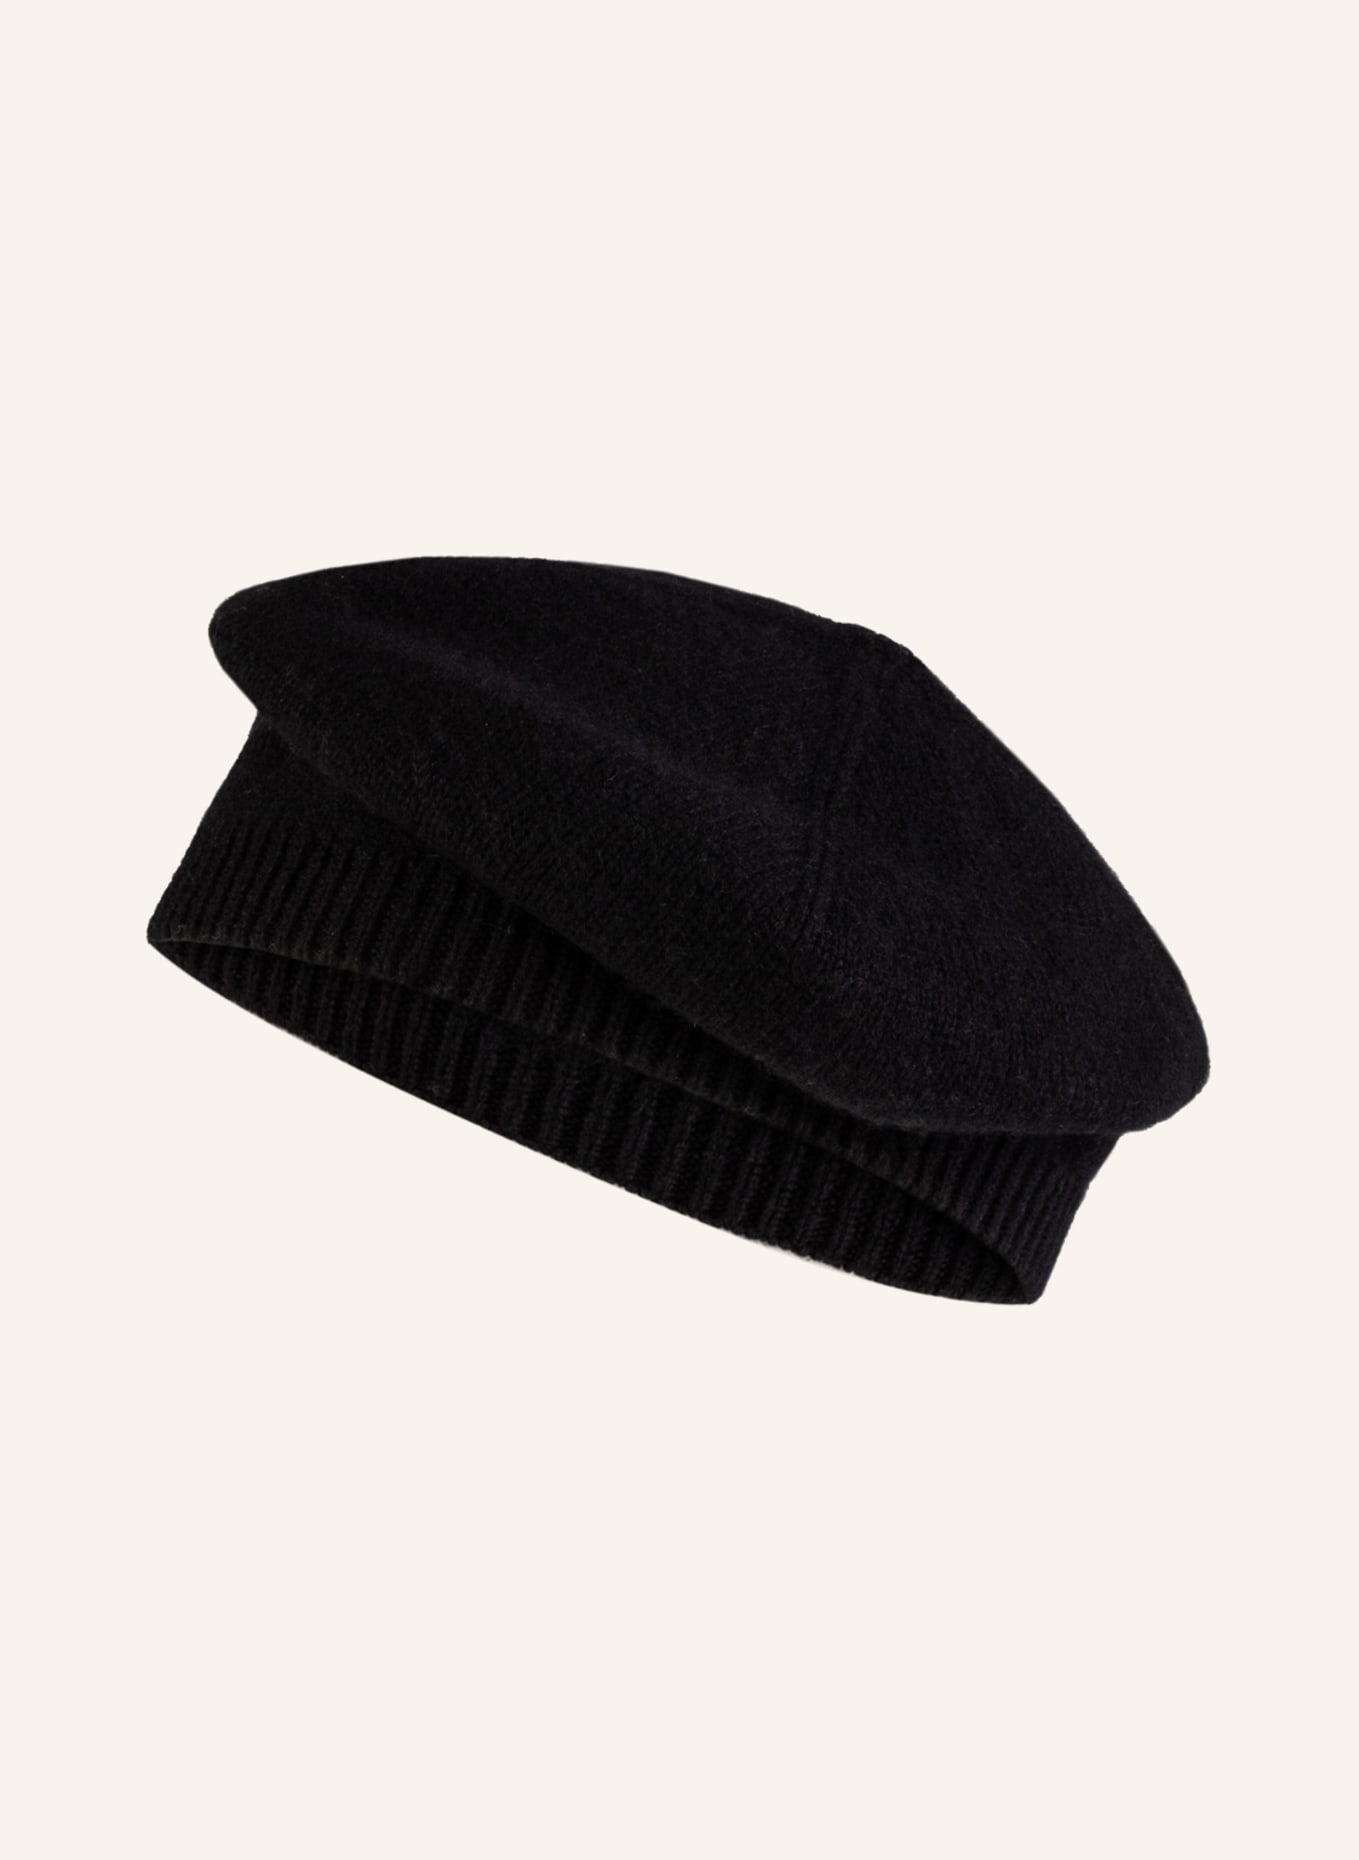 S.MARLON Cashmere hat, Color: BLACK (Image 1)